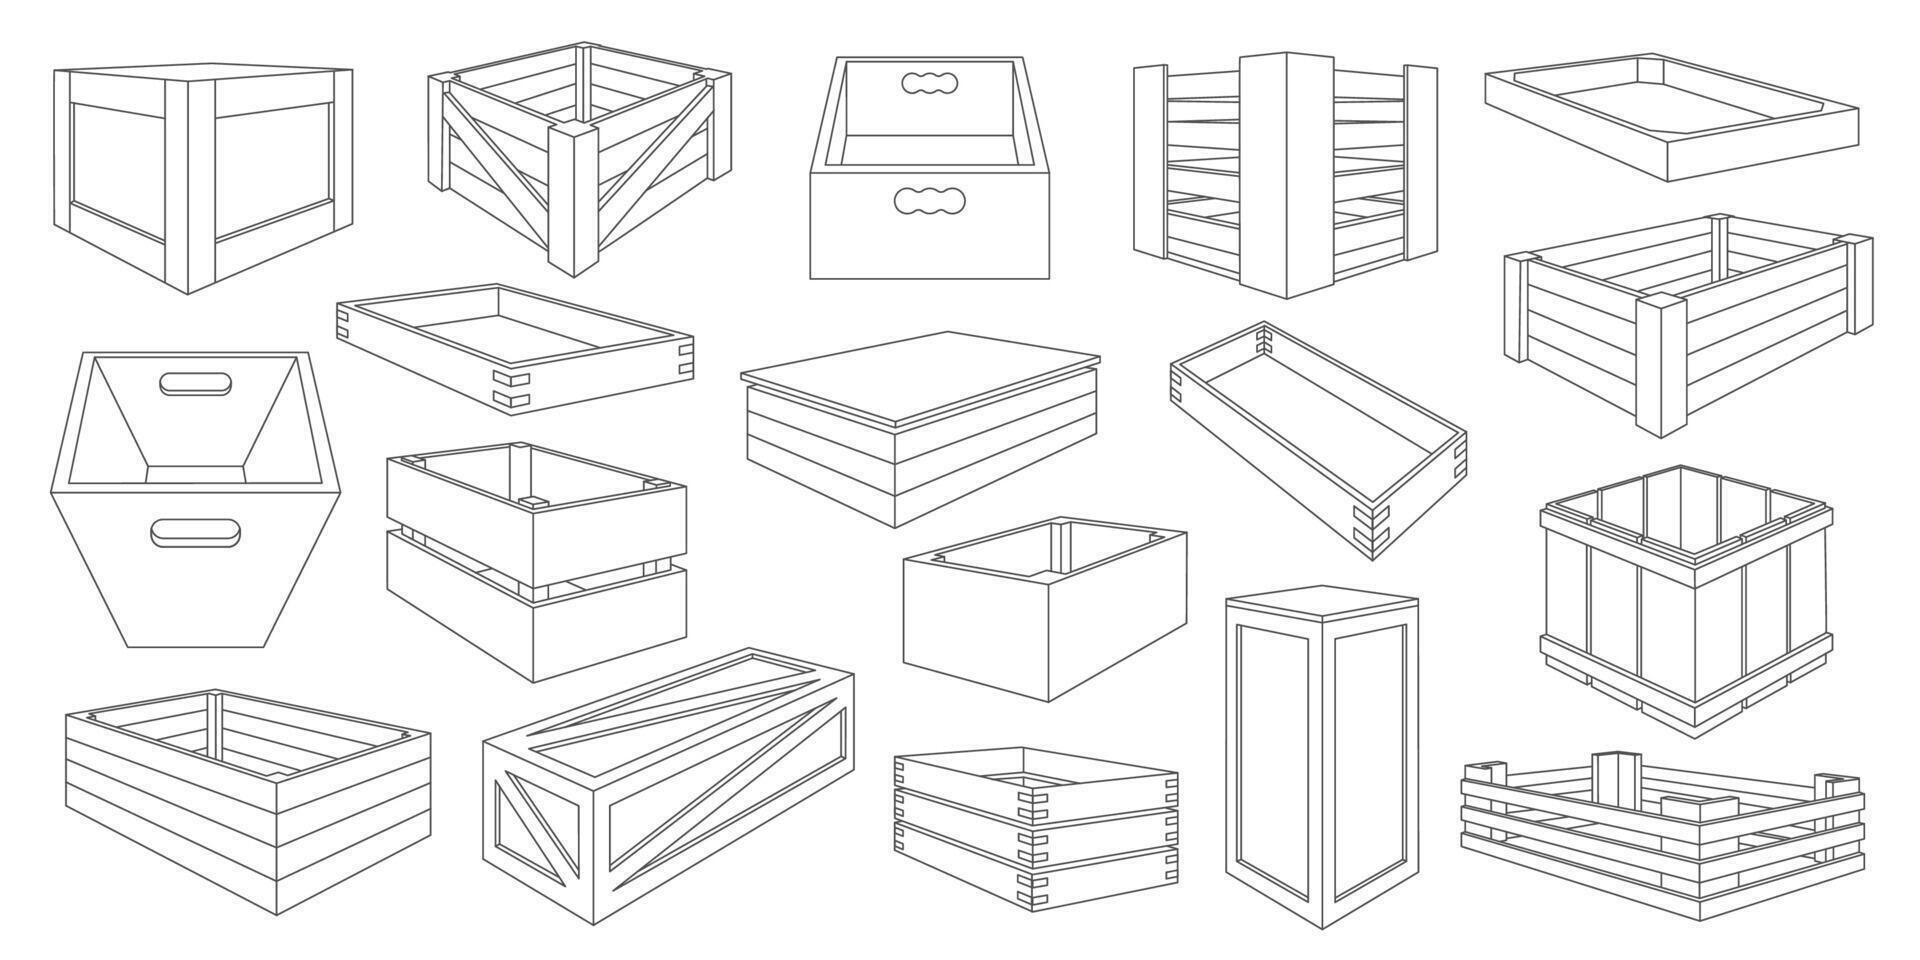 línea de madera cajas cerrado y abierto de madera caja paquete, tradicional de madera cesta y cajón para almacenamiento, de madera embalaje vector conjunto